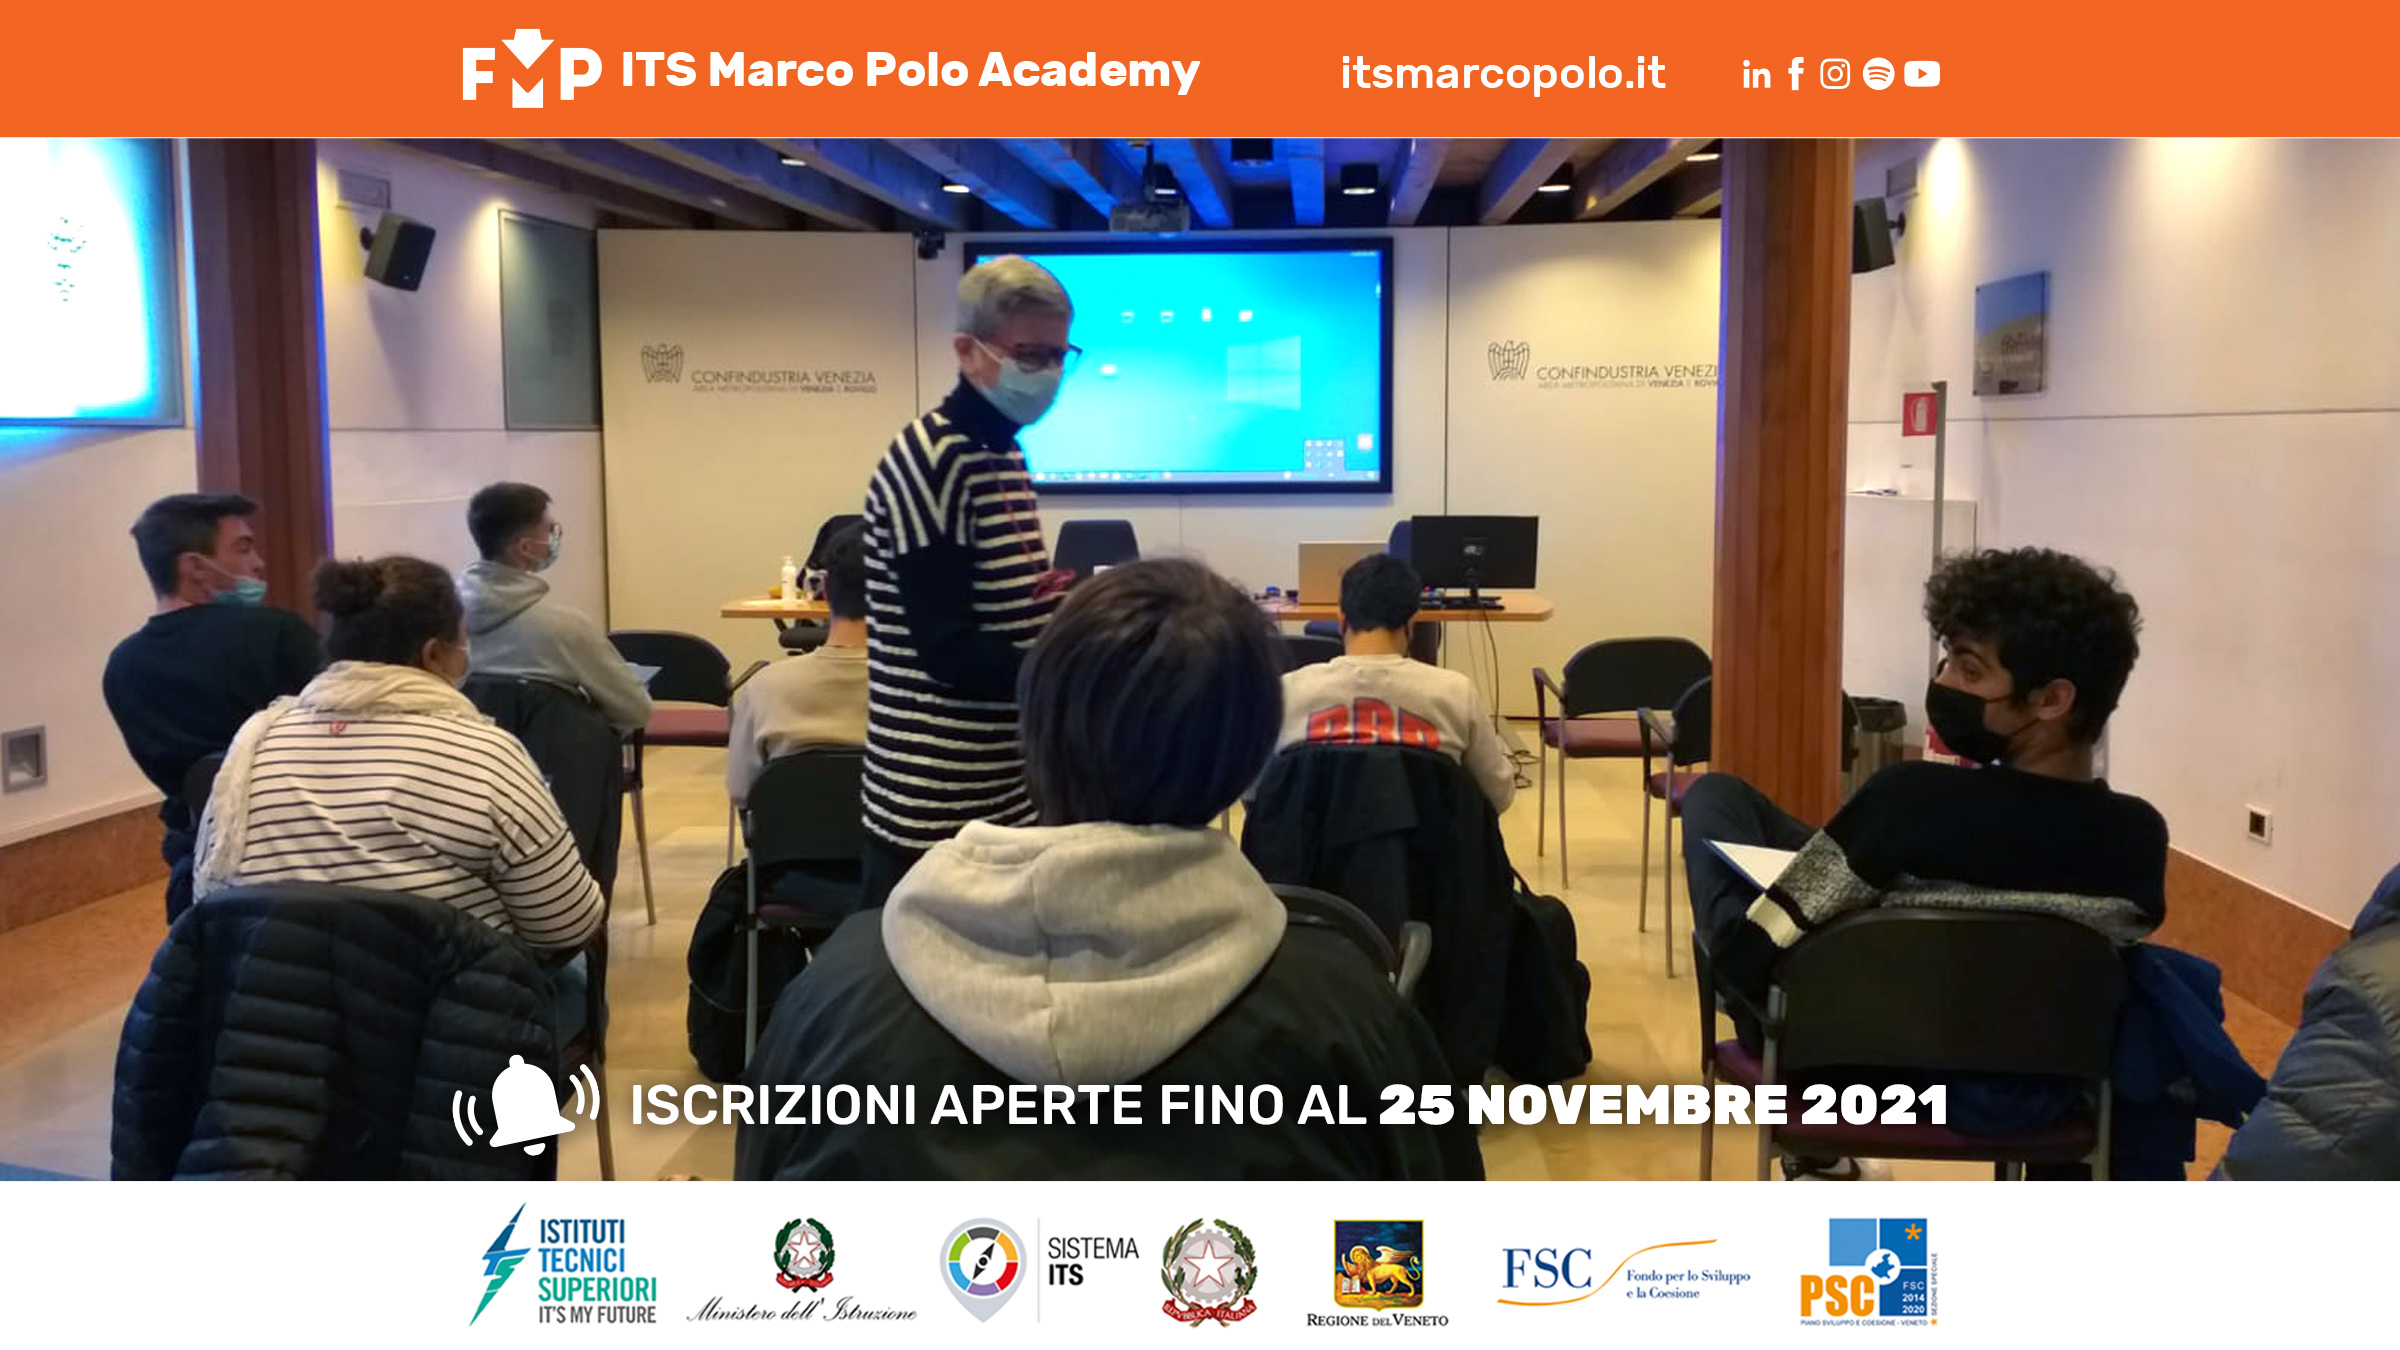 ITS MARCO POLO ACADEMY apre il secondo corso a Rovigo per rispondere ad una esigenza nazionale di formare il LOGISTICS MANAGER